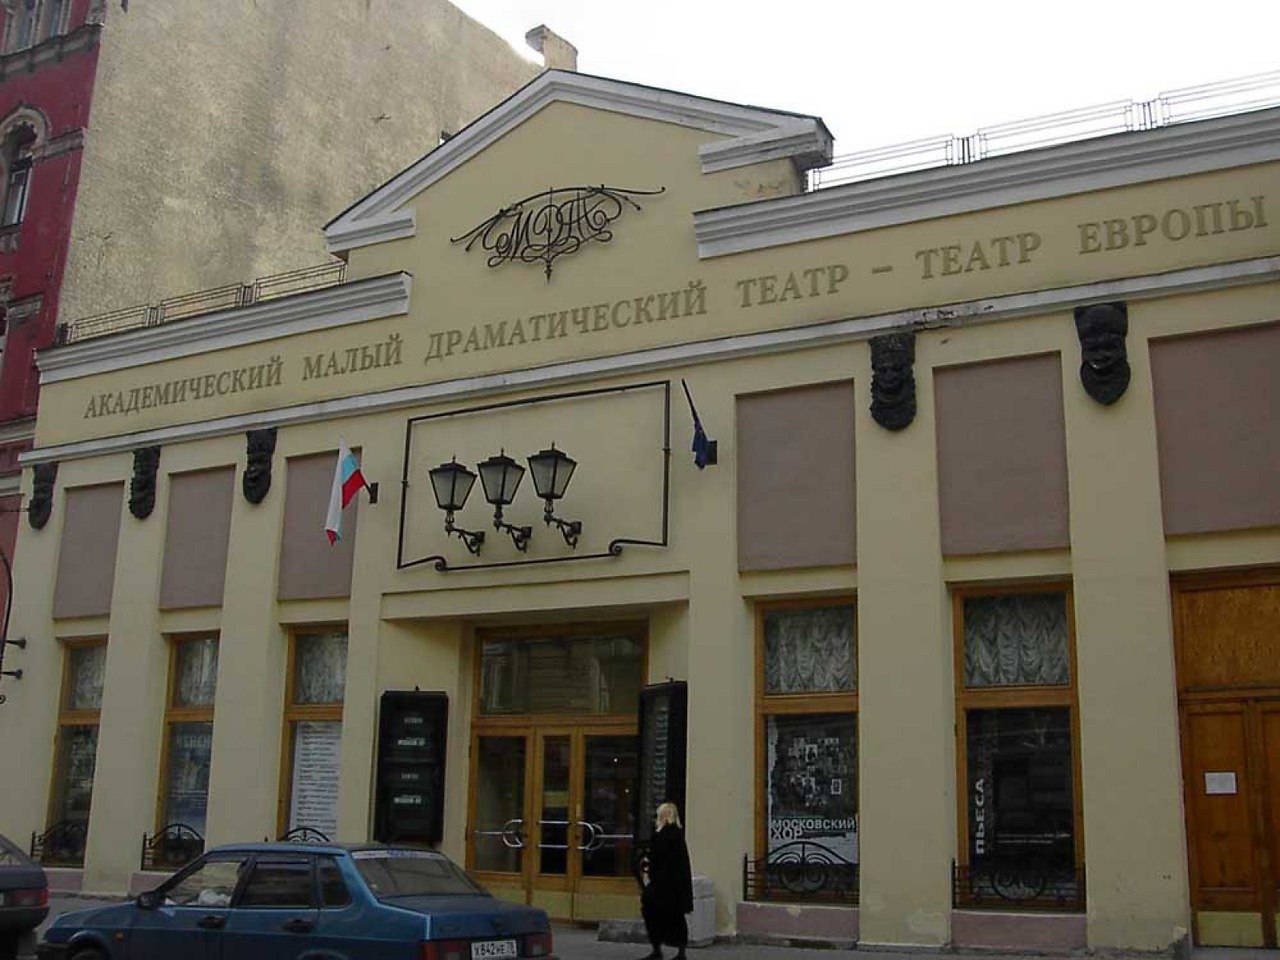 МДТ - театр Европы (Санкт–Петербург) здание